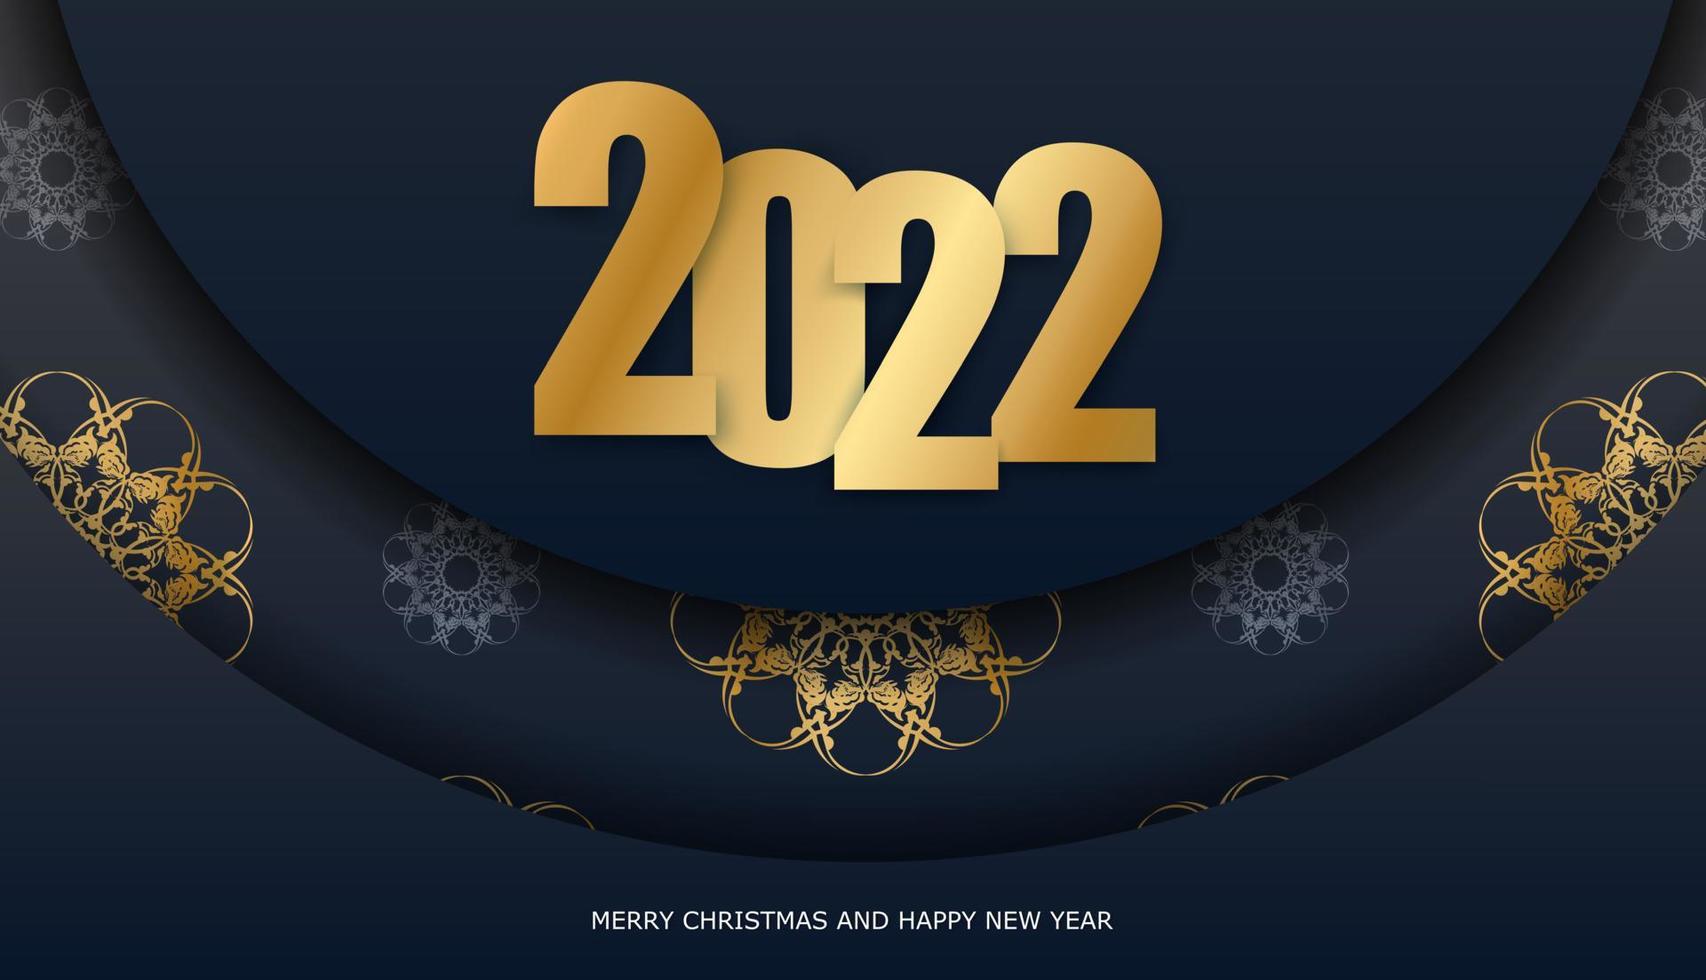 2022 cartão de felicitações feliz ano novo preto com padrão de ouro de luxo vetor